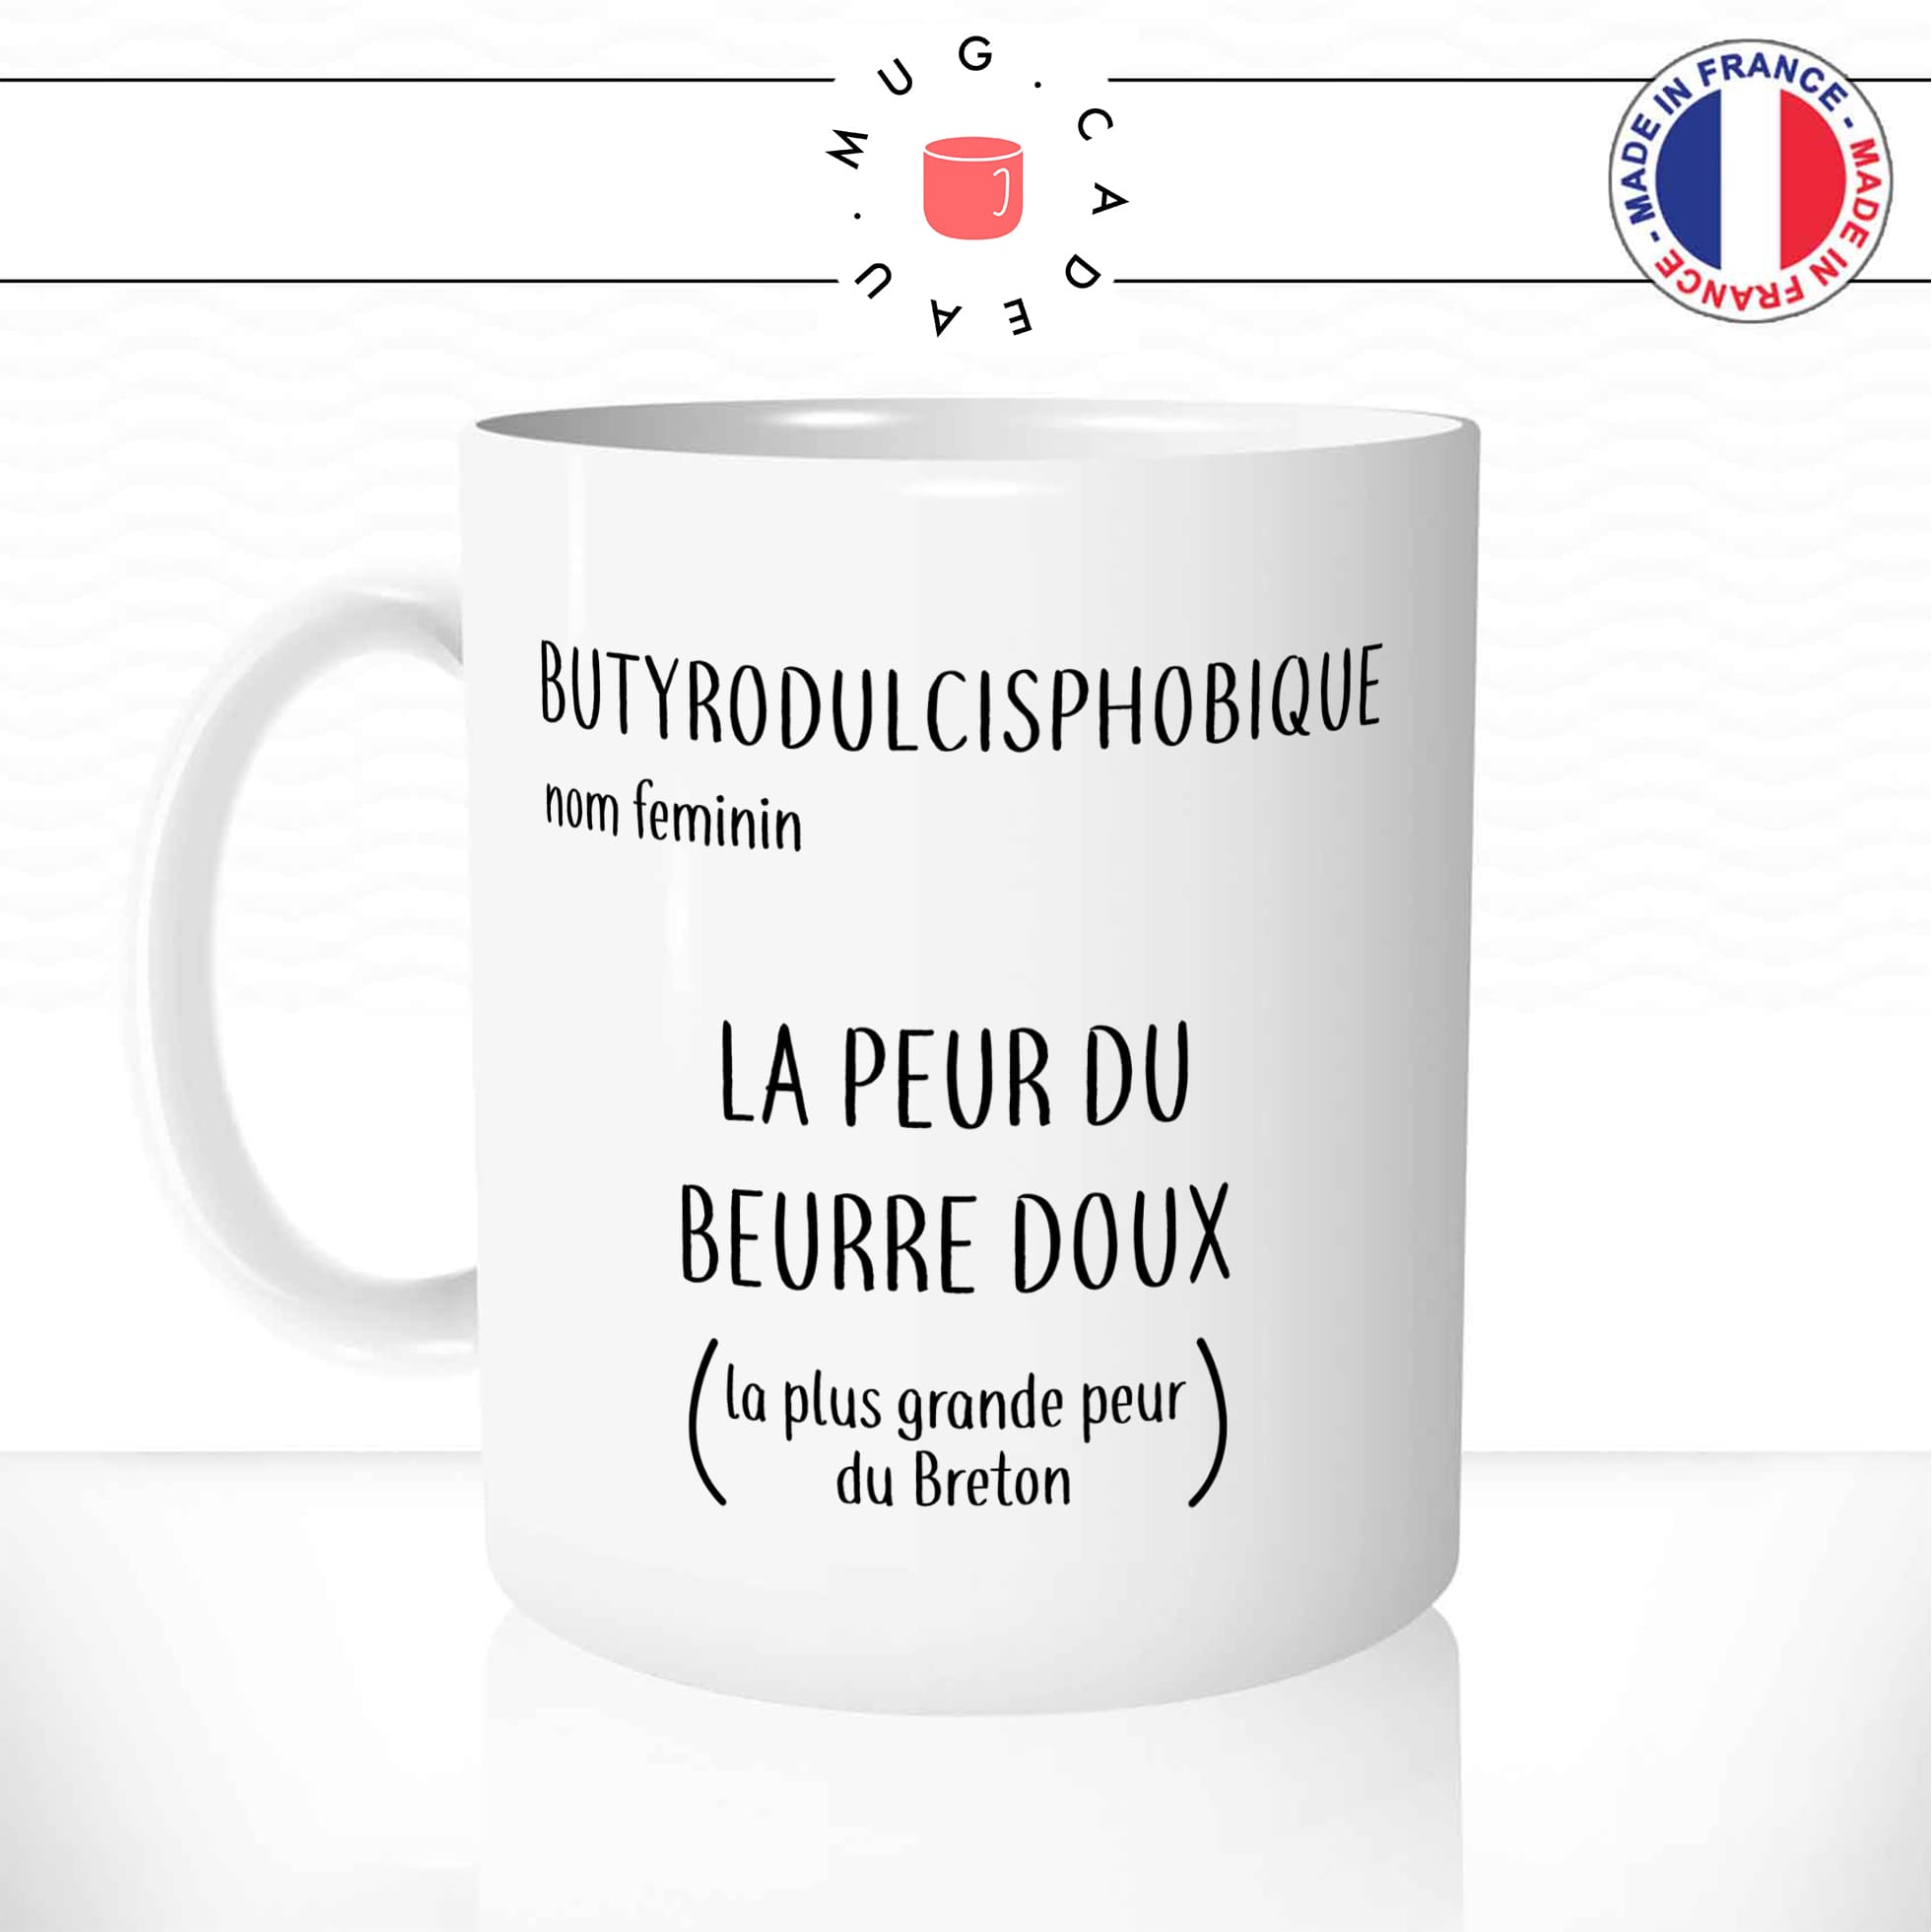 mug-tasse-phobie-beurre-doux-breton-bretagne-humour-drole-salé-cristaux-nord-france-fun-café-thé-idée-cadeau-originale-personnalisée